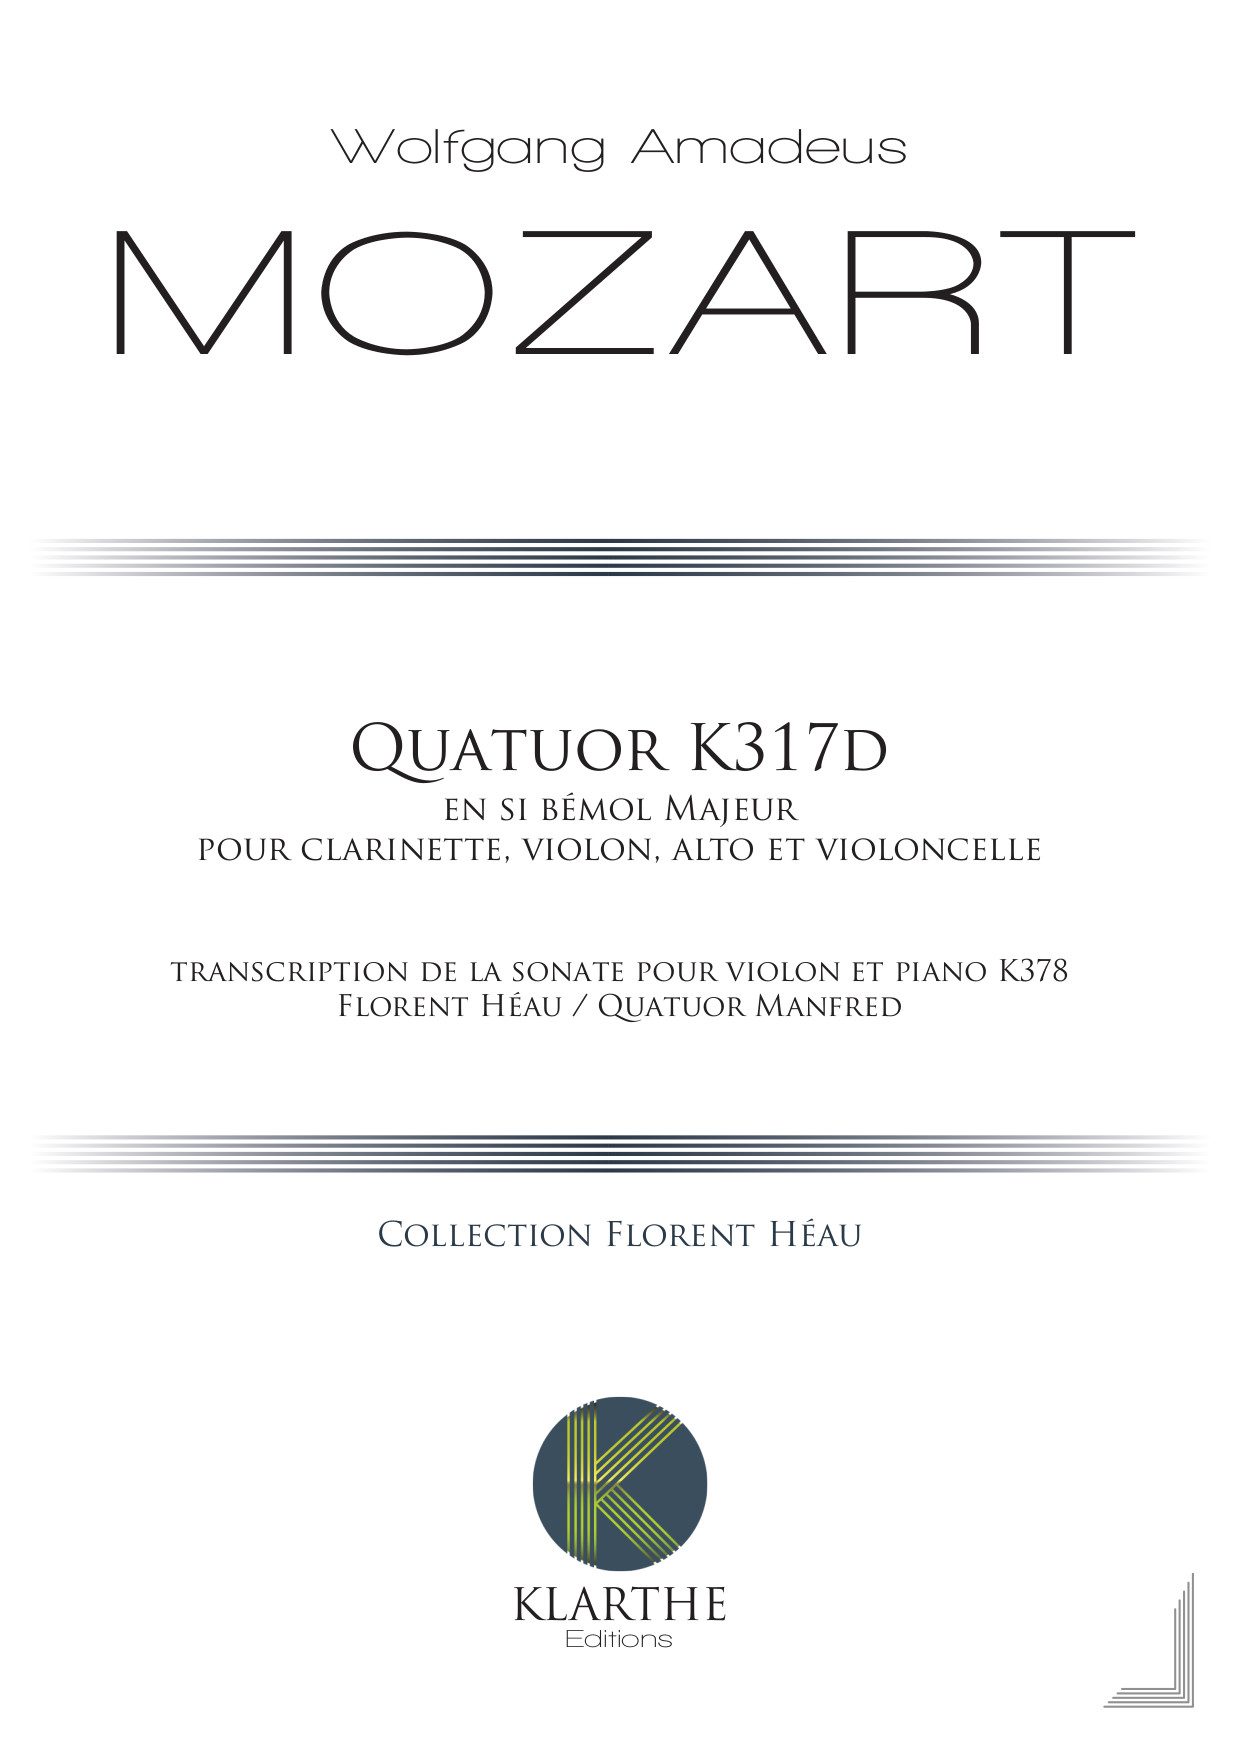 Quatuor K378/317d (MOZART WOLFGANG AMADEUS)